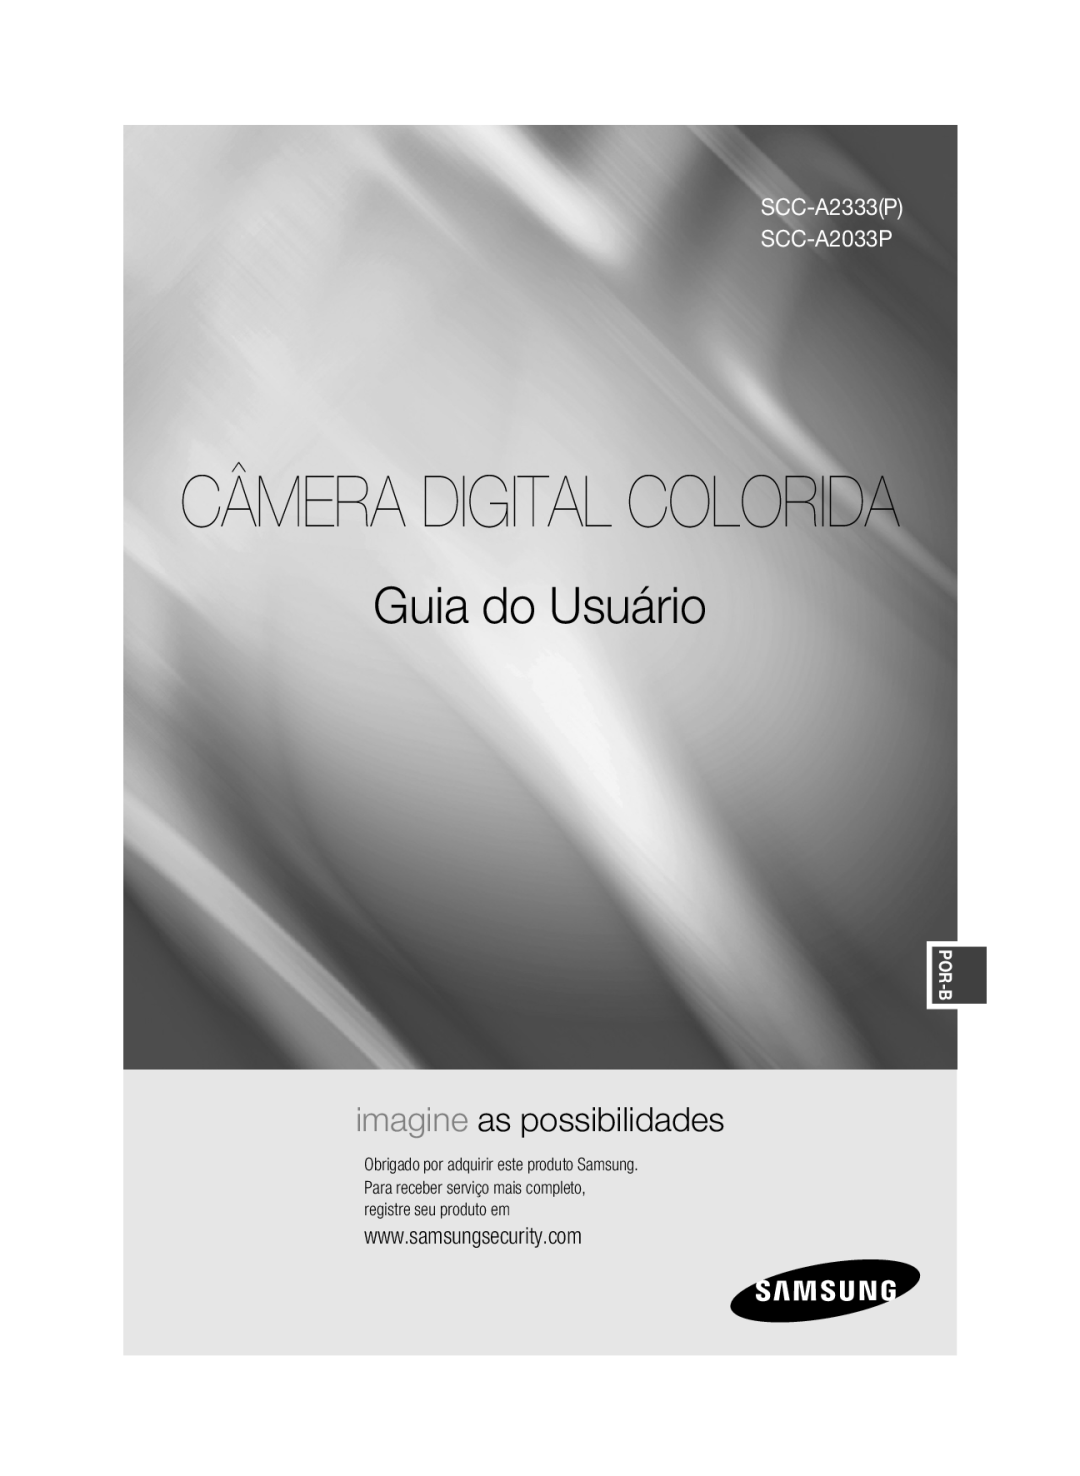 Samsung manual Câmera Digital Colorida, Guia do Usuário, imagine as possibilidades, SCC-A2333P SCC-A2033P, Por-B 